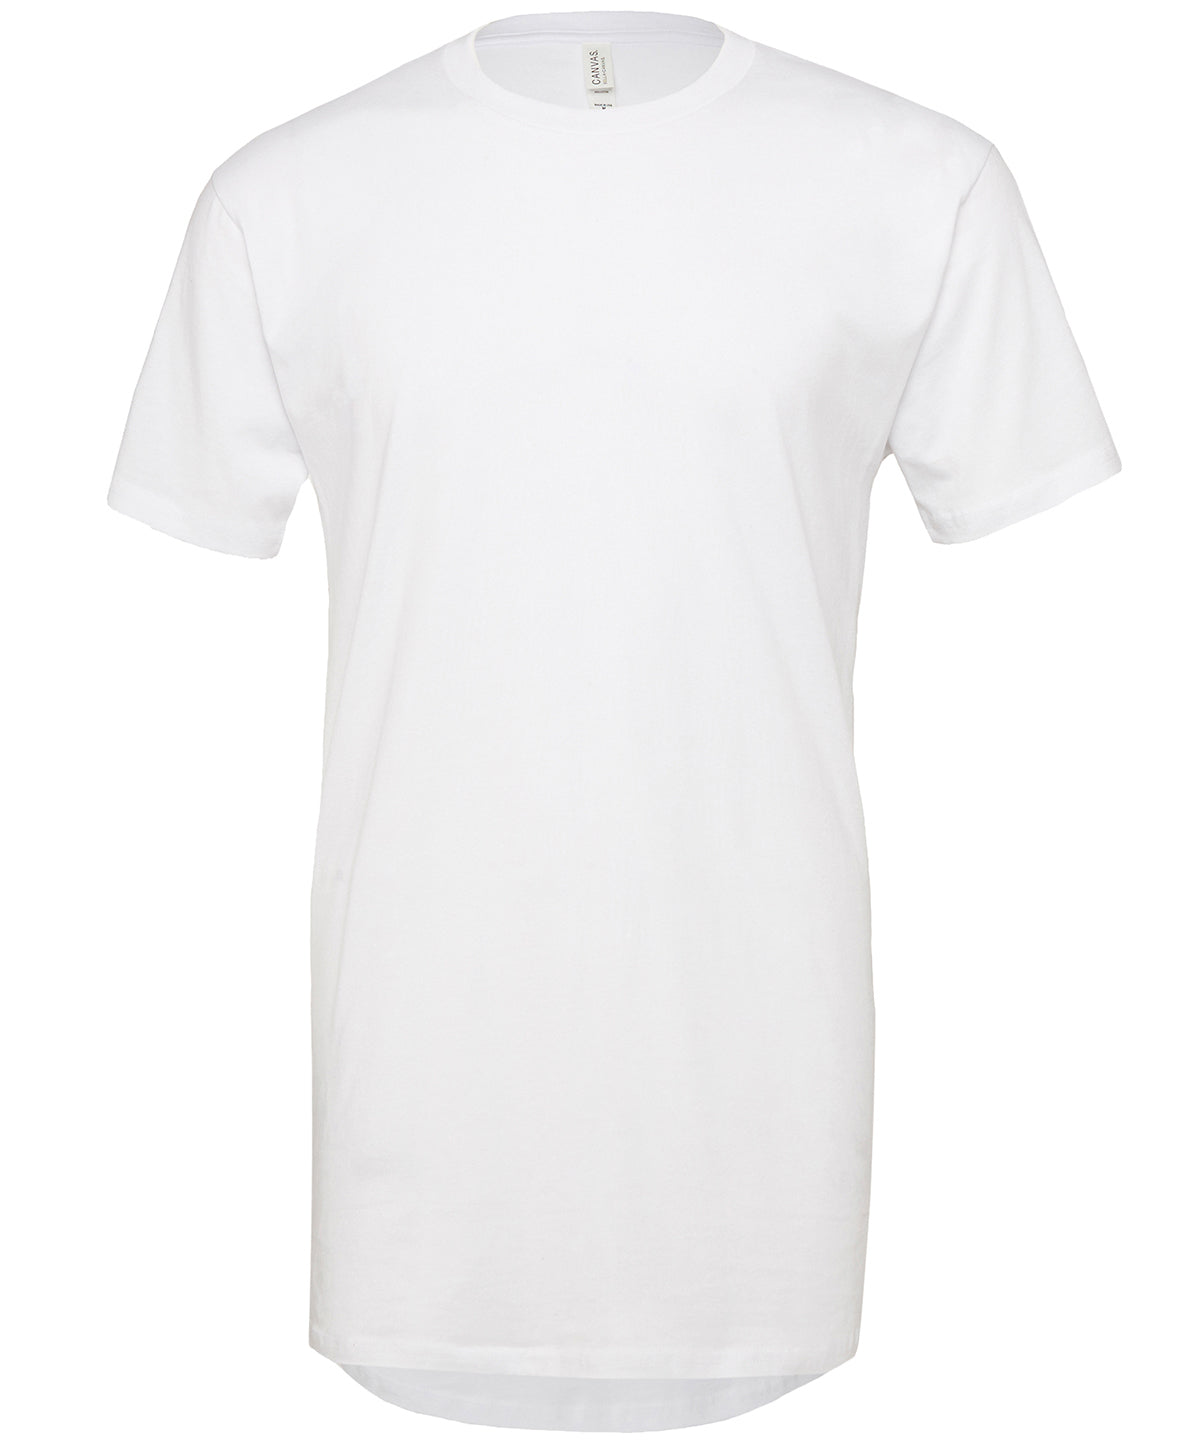 Stuttermabolir - Unisex Long Body Urban T-shirt